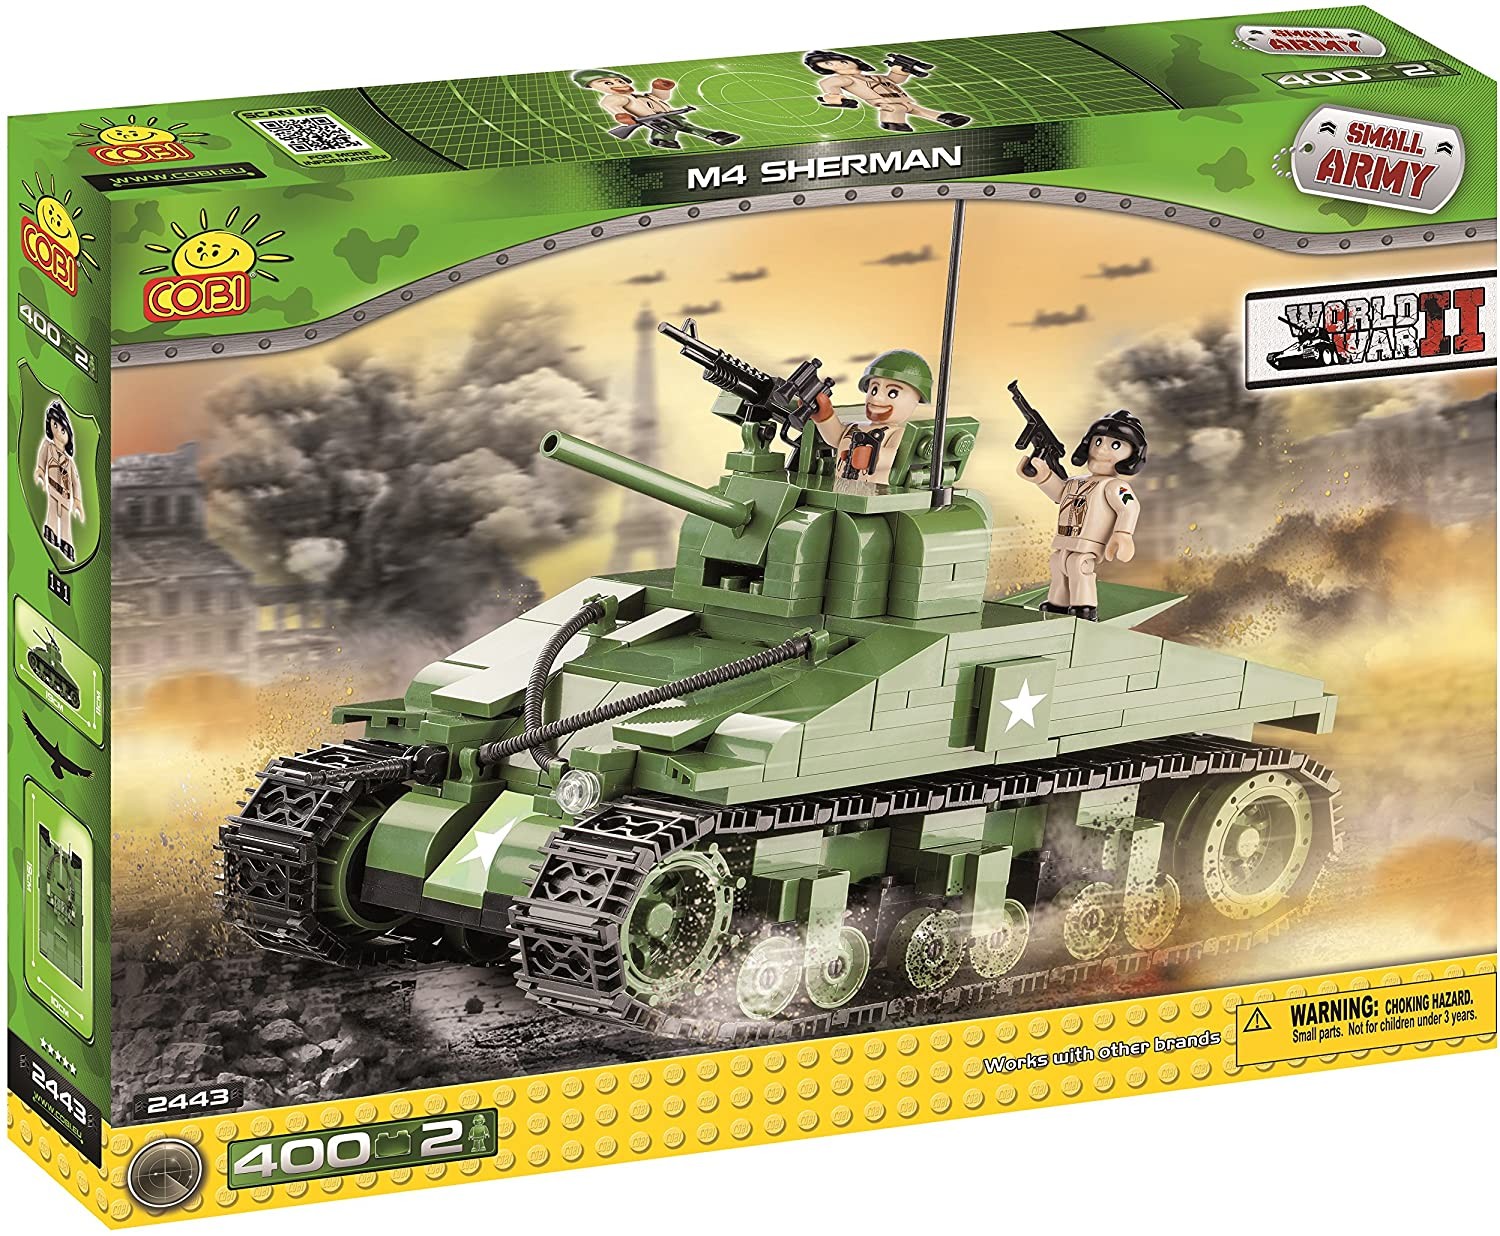 2443 - M4 Sherman